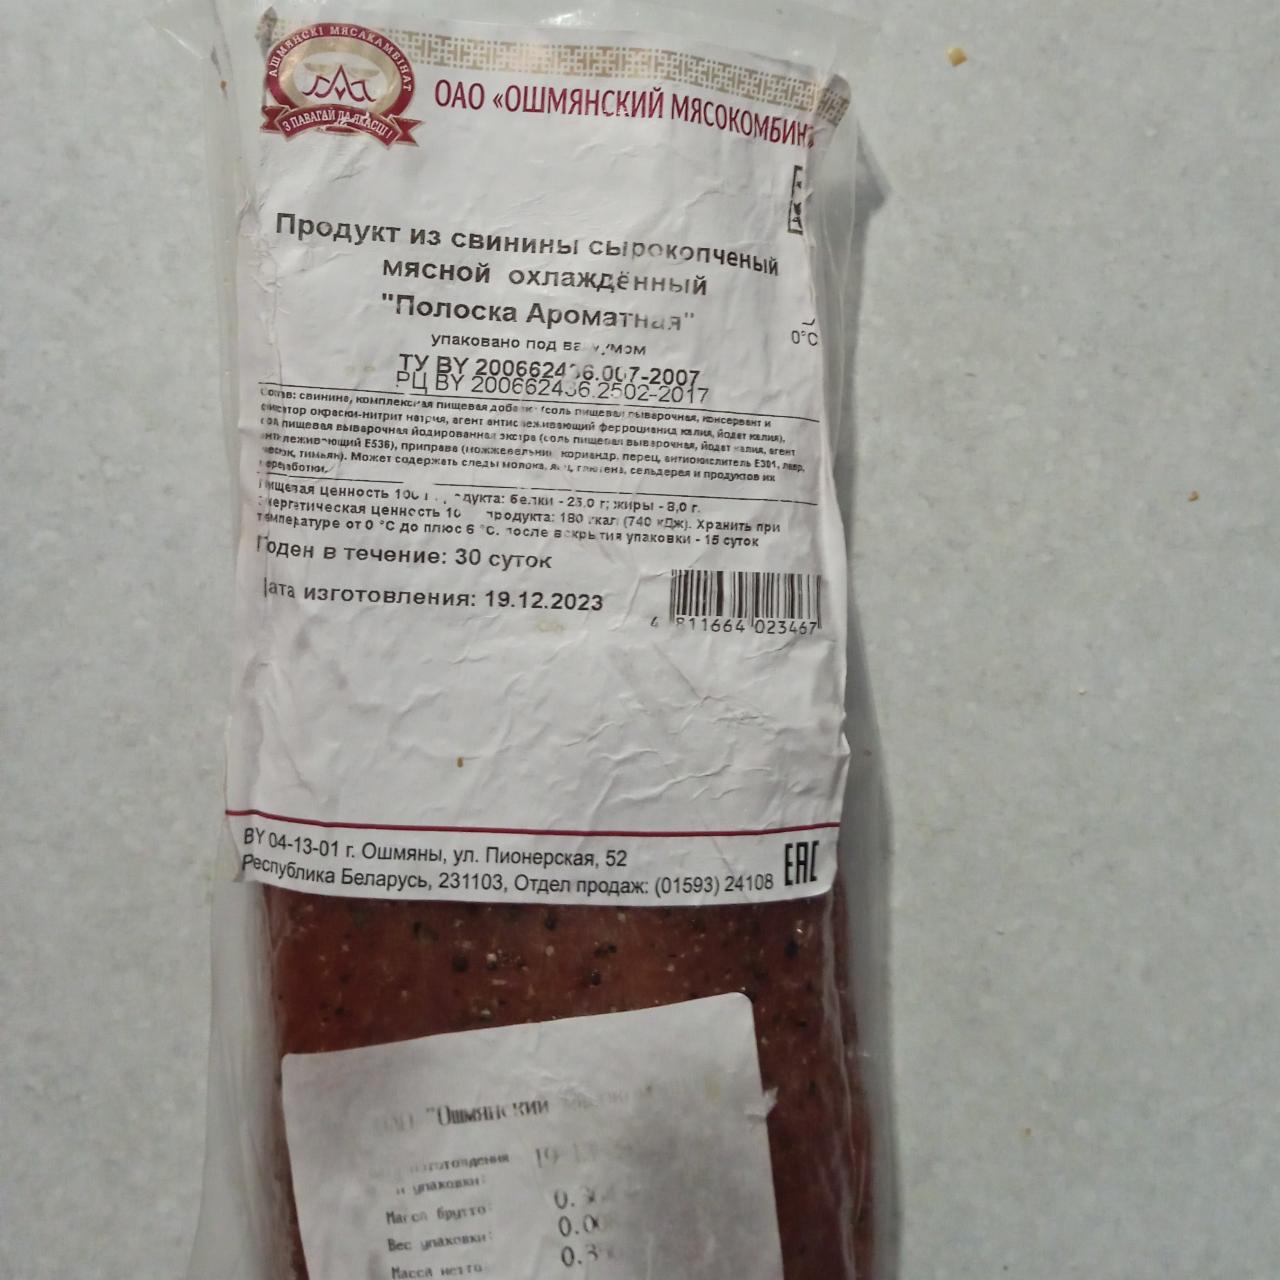 Фото - Продукт из свинины сырокопченый мясной охлаждённый Полоска Ароматная Ошмянский мясокомбинат